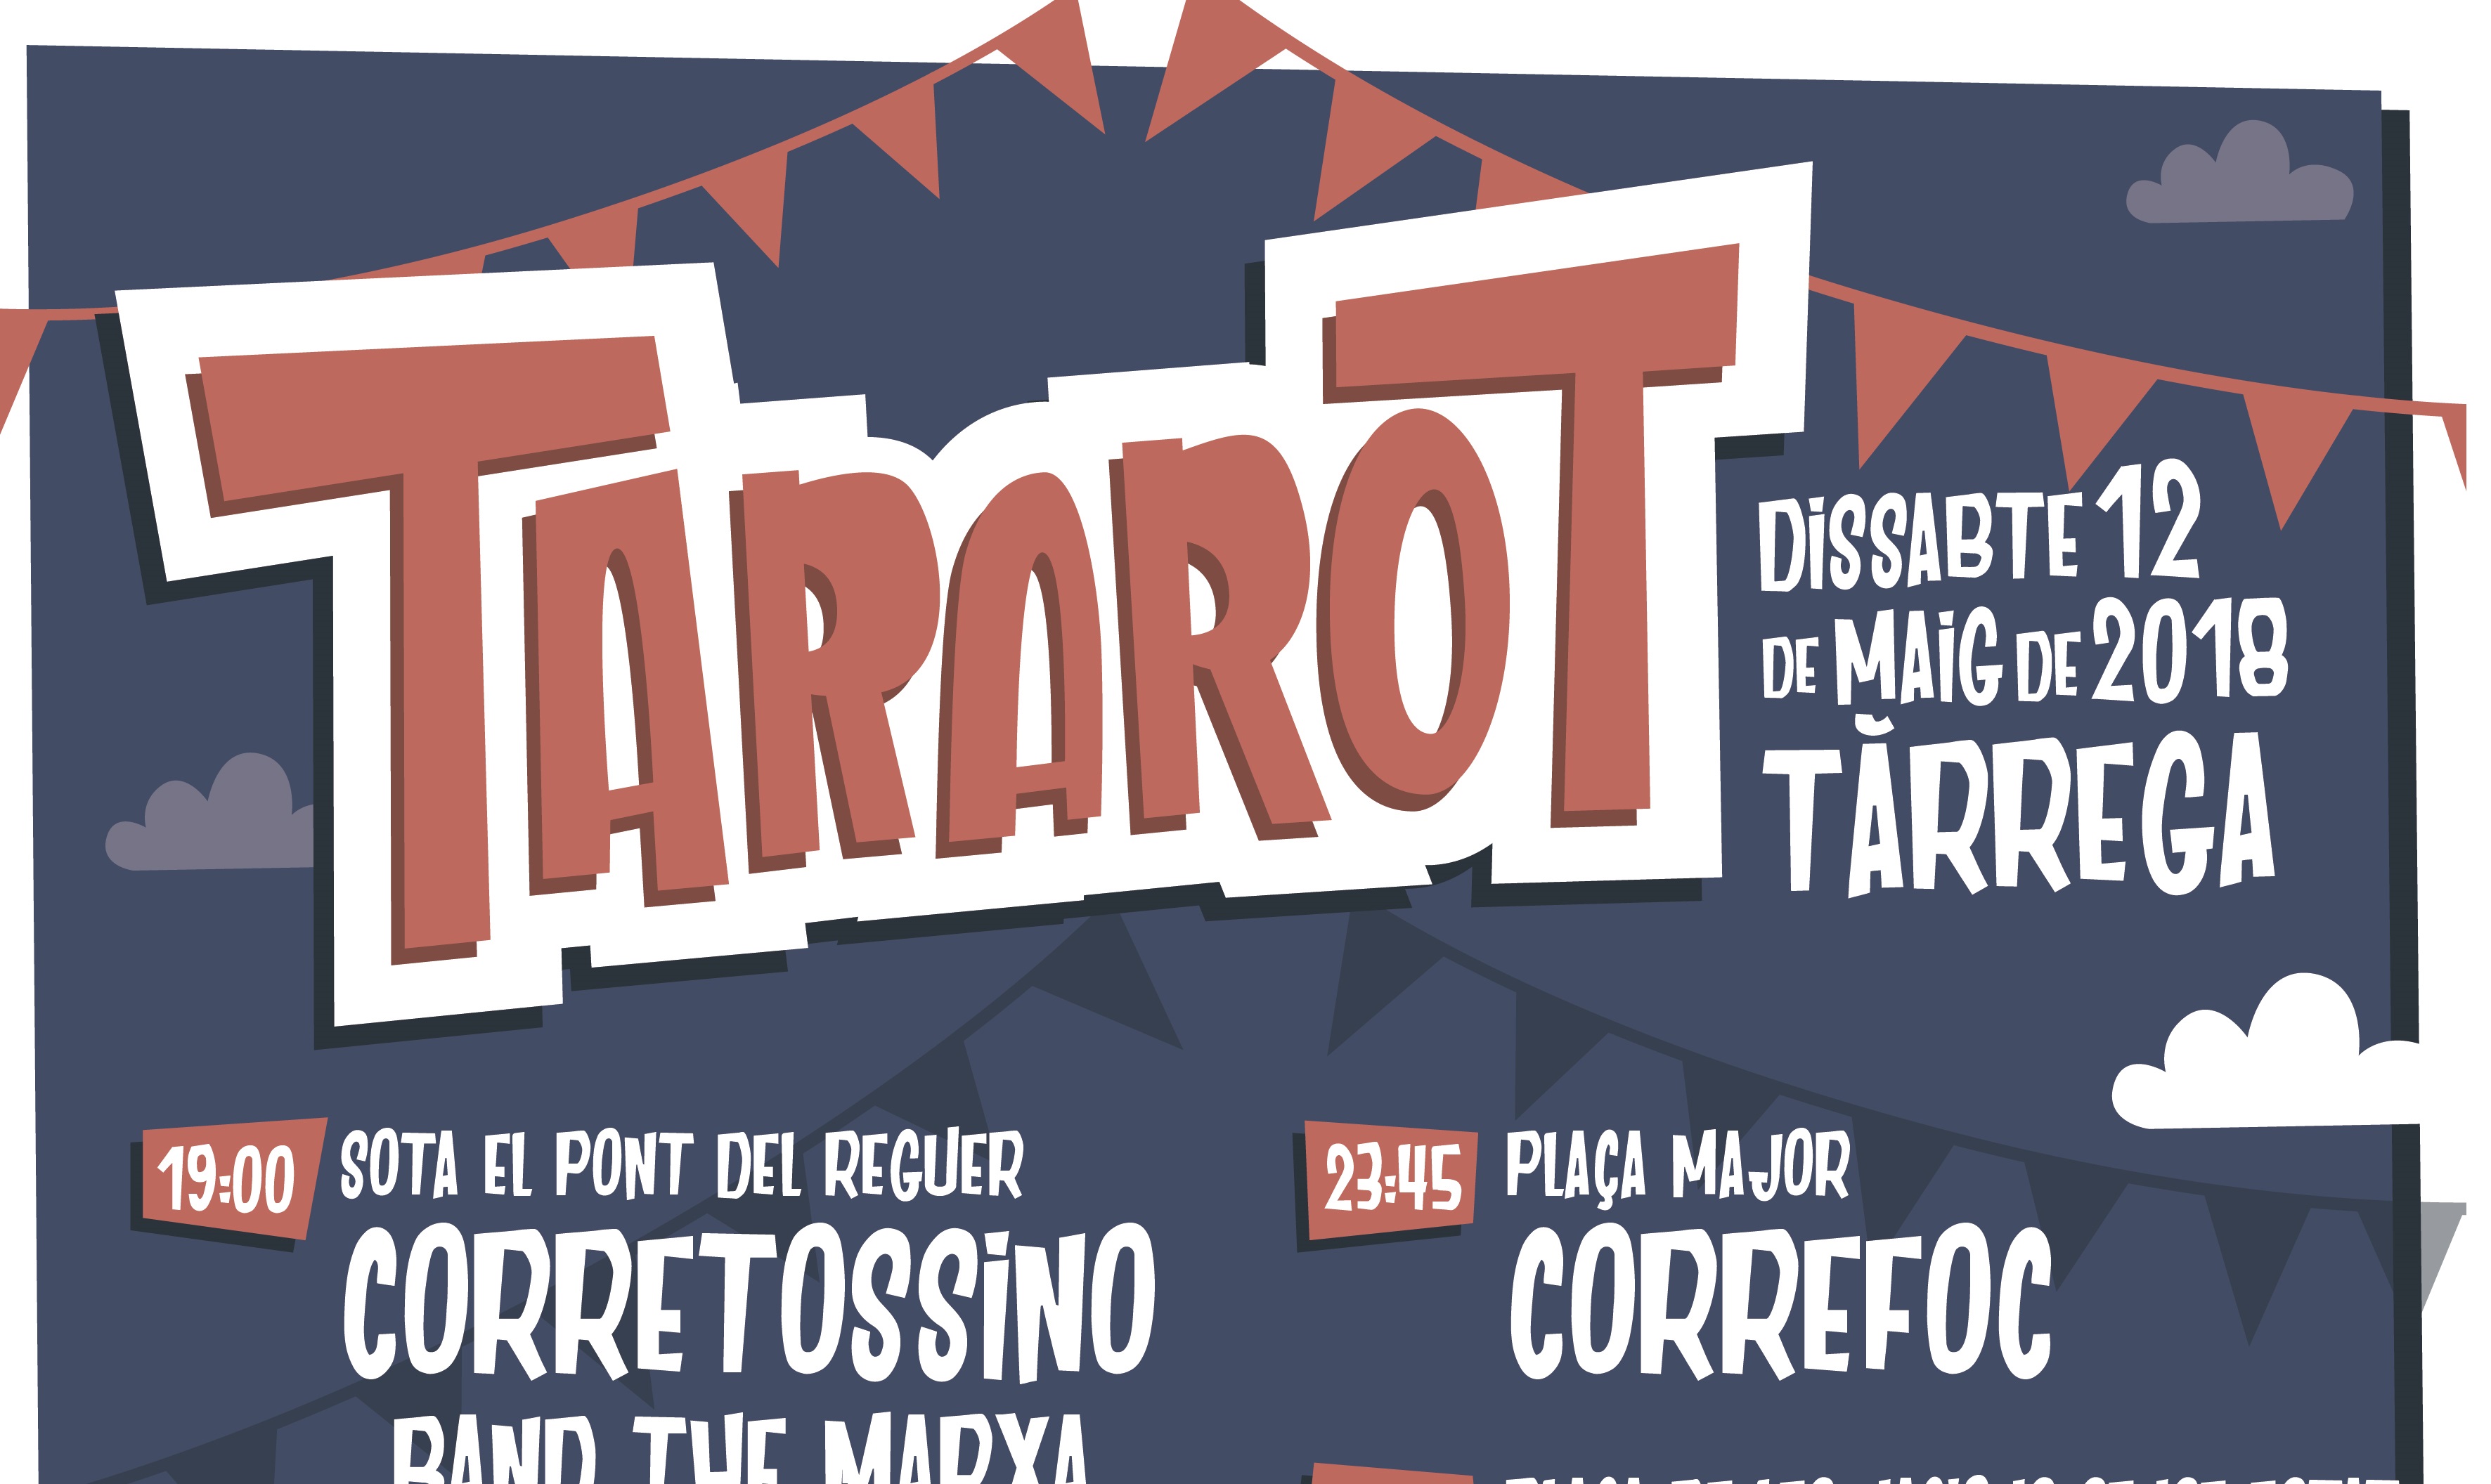 La Nit del Tararot torna a ser la nit central de la Festa Major de maig de Tàrrega